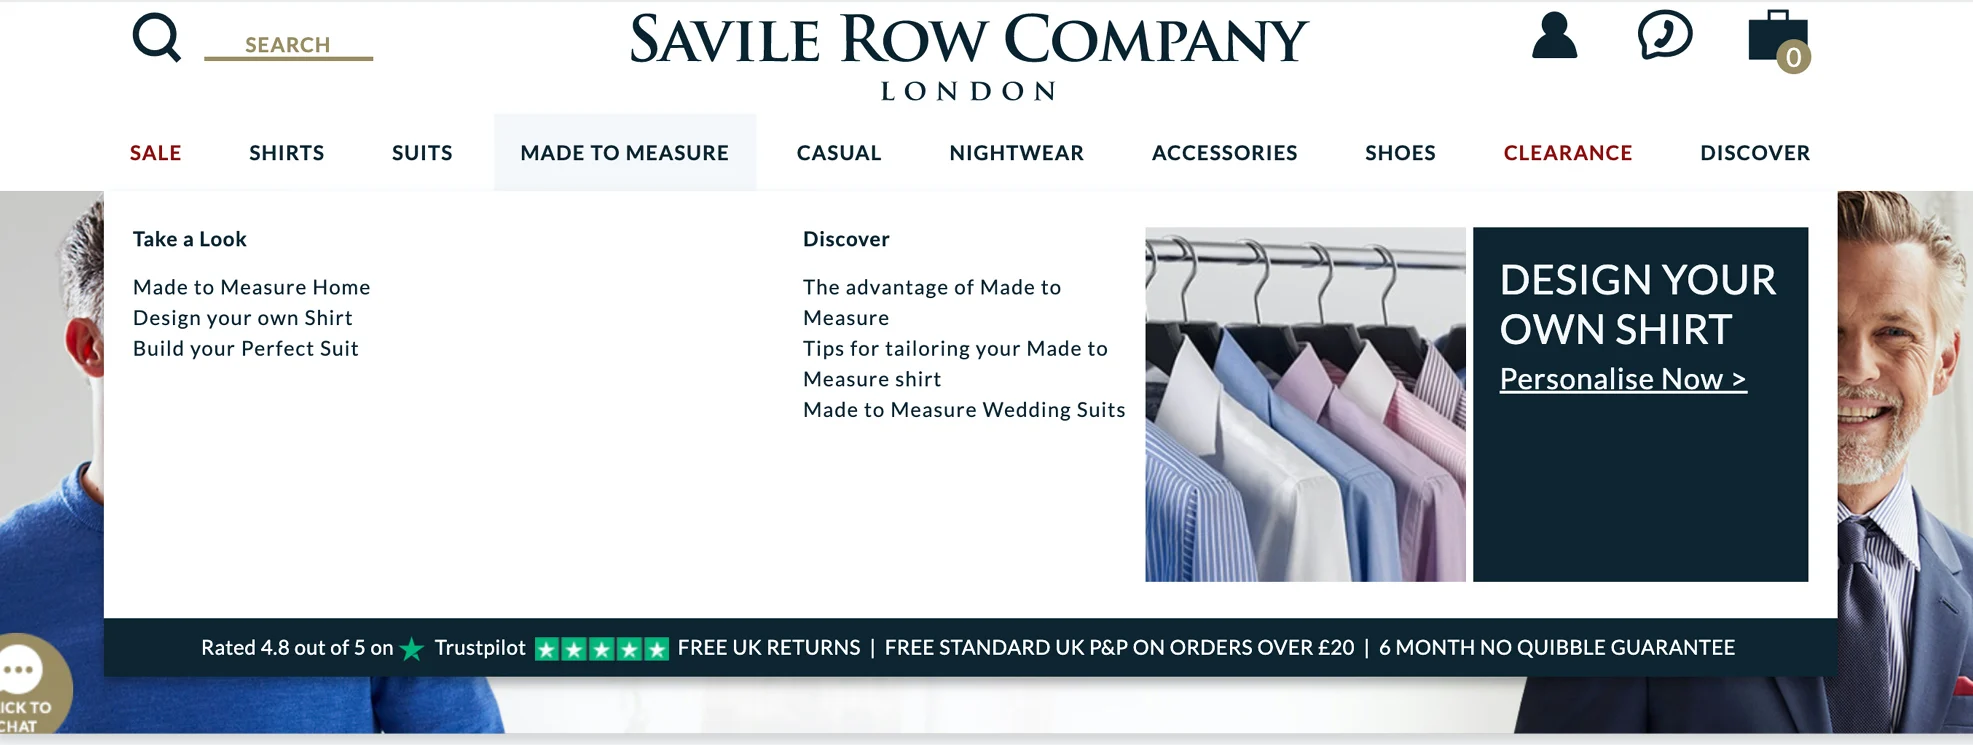 Il sito web della Savile Row Company, che mostra la valutazione di Trustpilot dell'azienda. Questa ricerca mostra che le valutazioni e le recensioni, insieme al passaparola, sono le fonti di informazioni più affidabili.